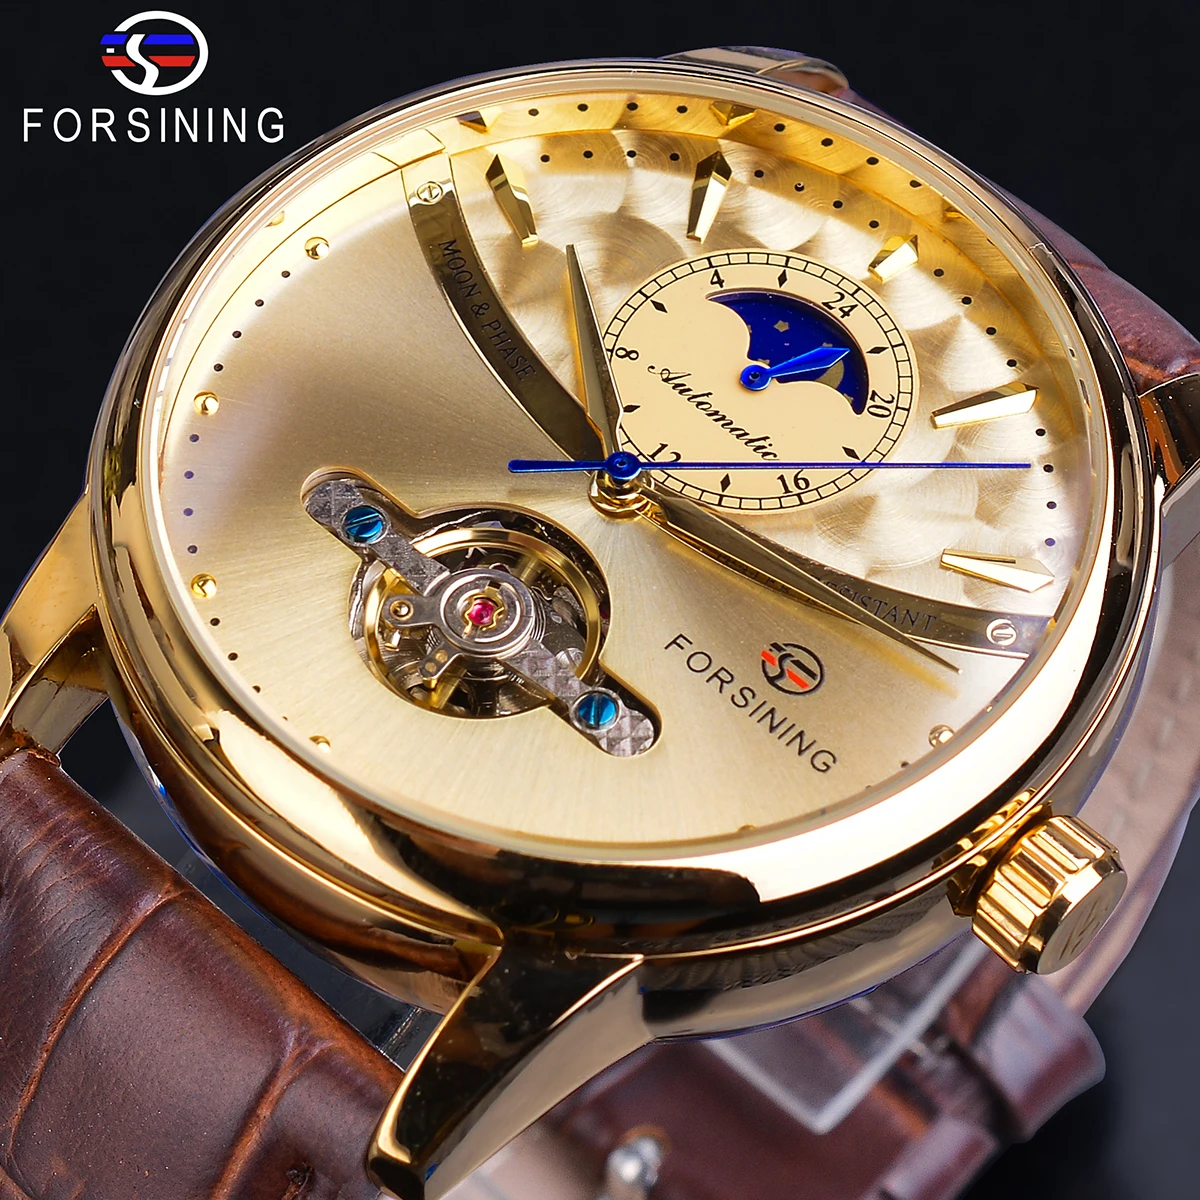 Forsining Moon Phase Автоматические часы Royal Men, Золотые водонепроницаемые механические наручные часы, Повседневные часы с Турбийоном из натуральной кожи